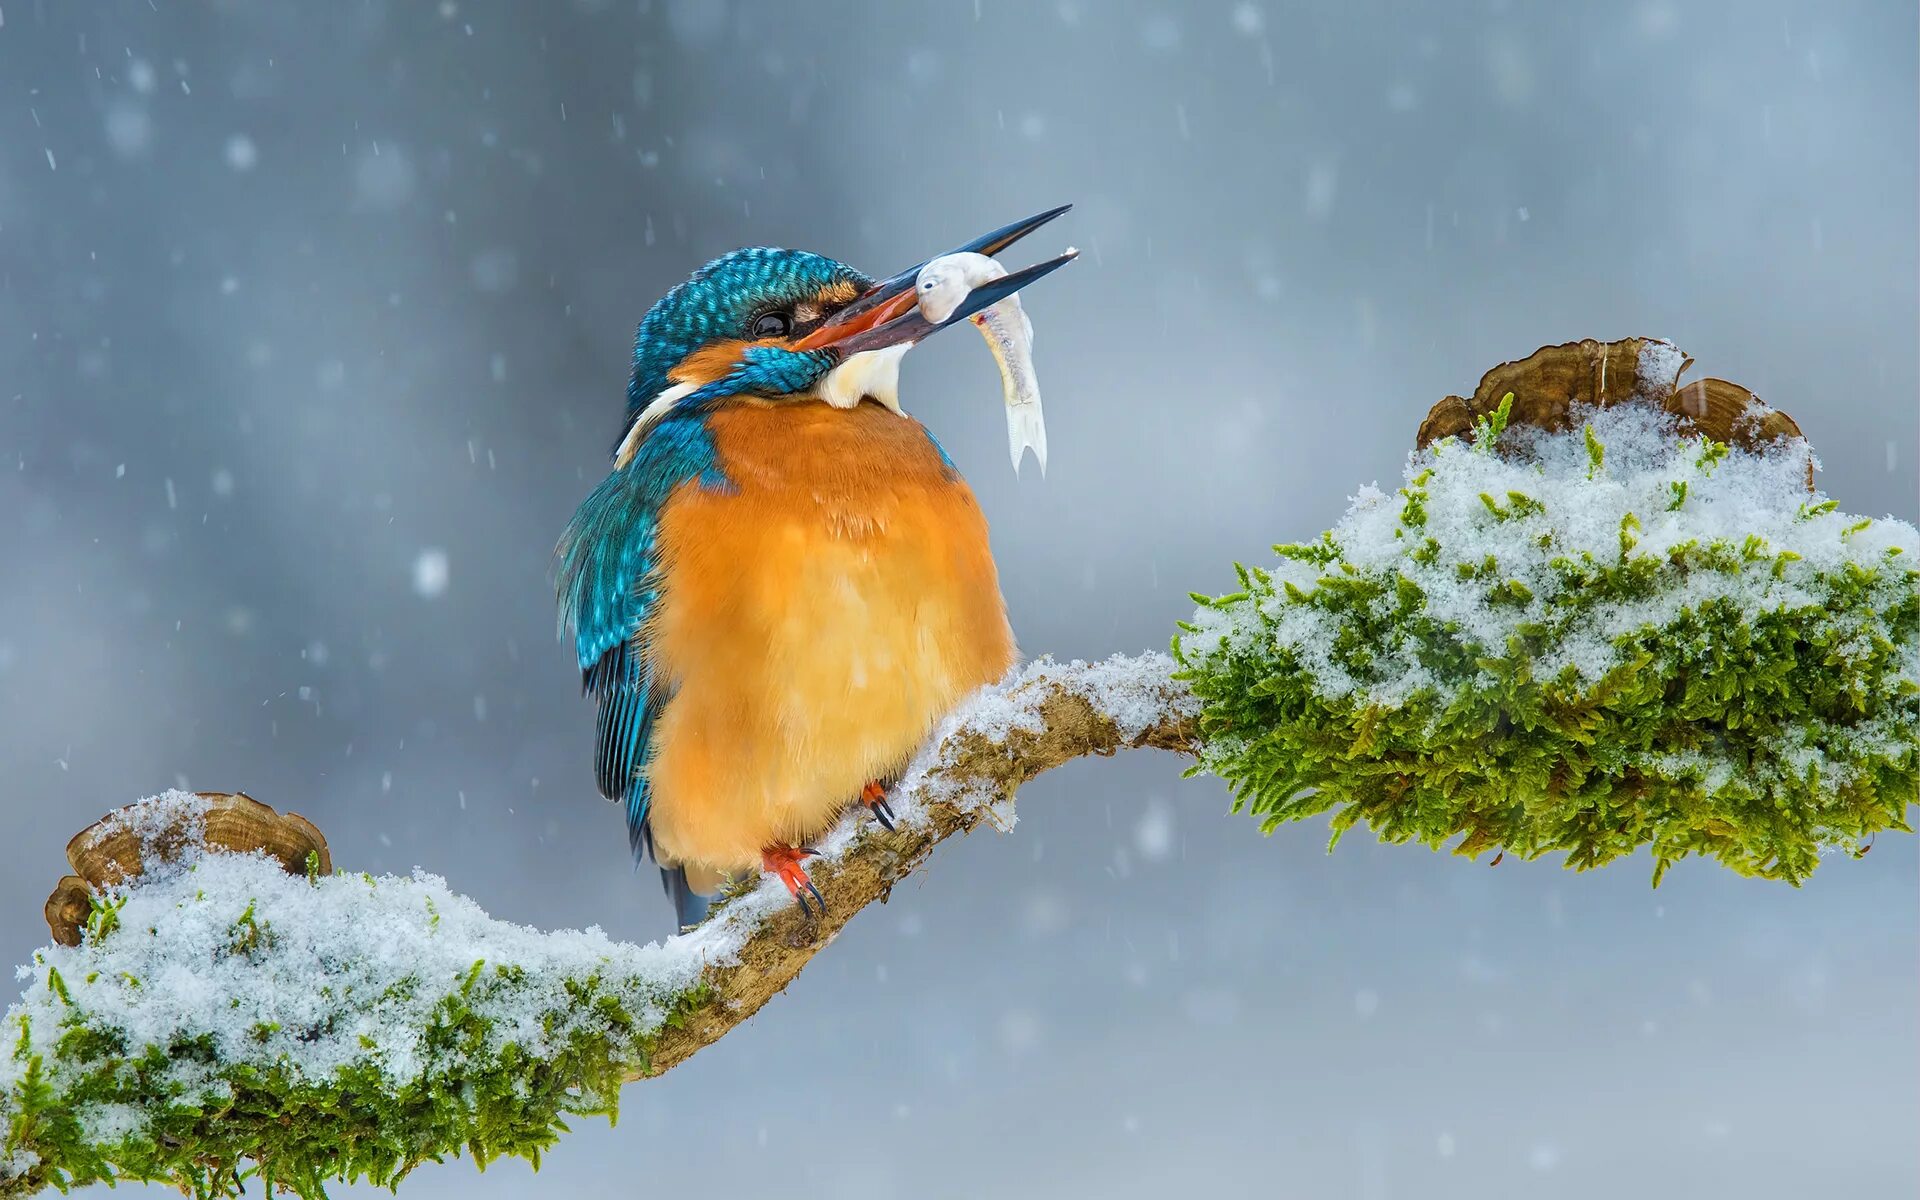 Природа снег птица